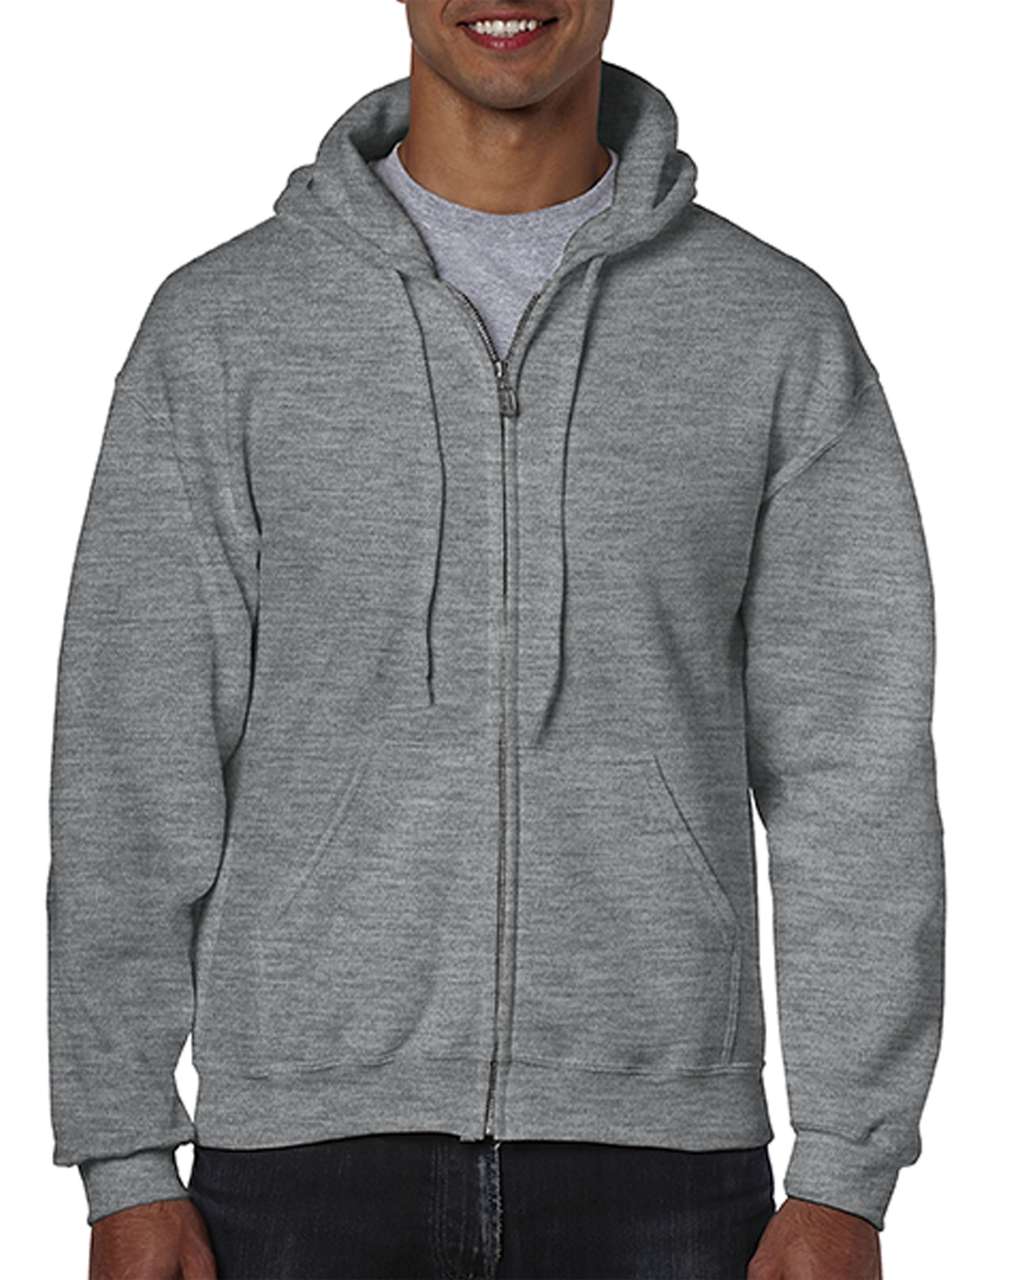 Gildan Heavy Blend™ Adult Full Zip Hooded Sweatshirt - Grau